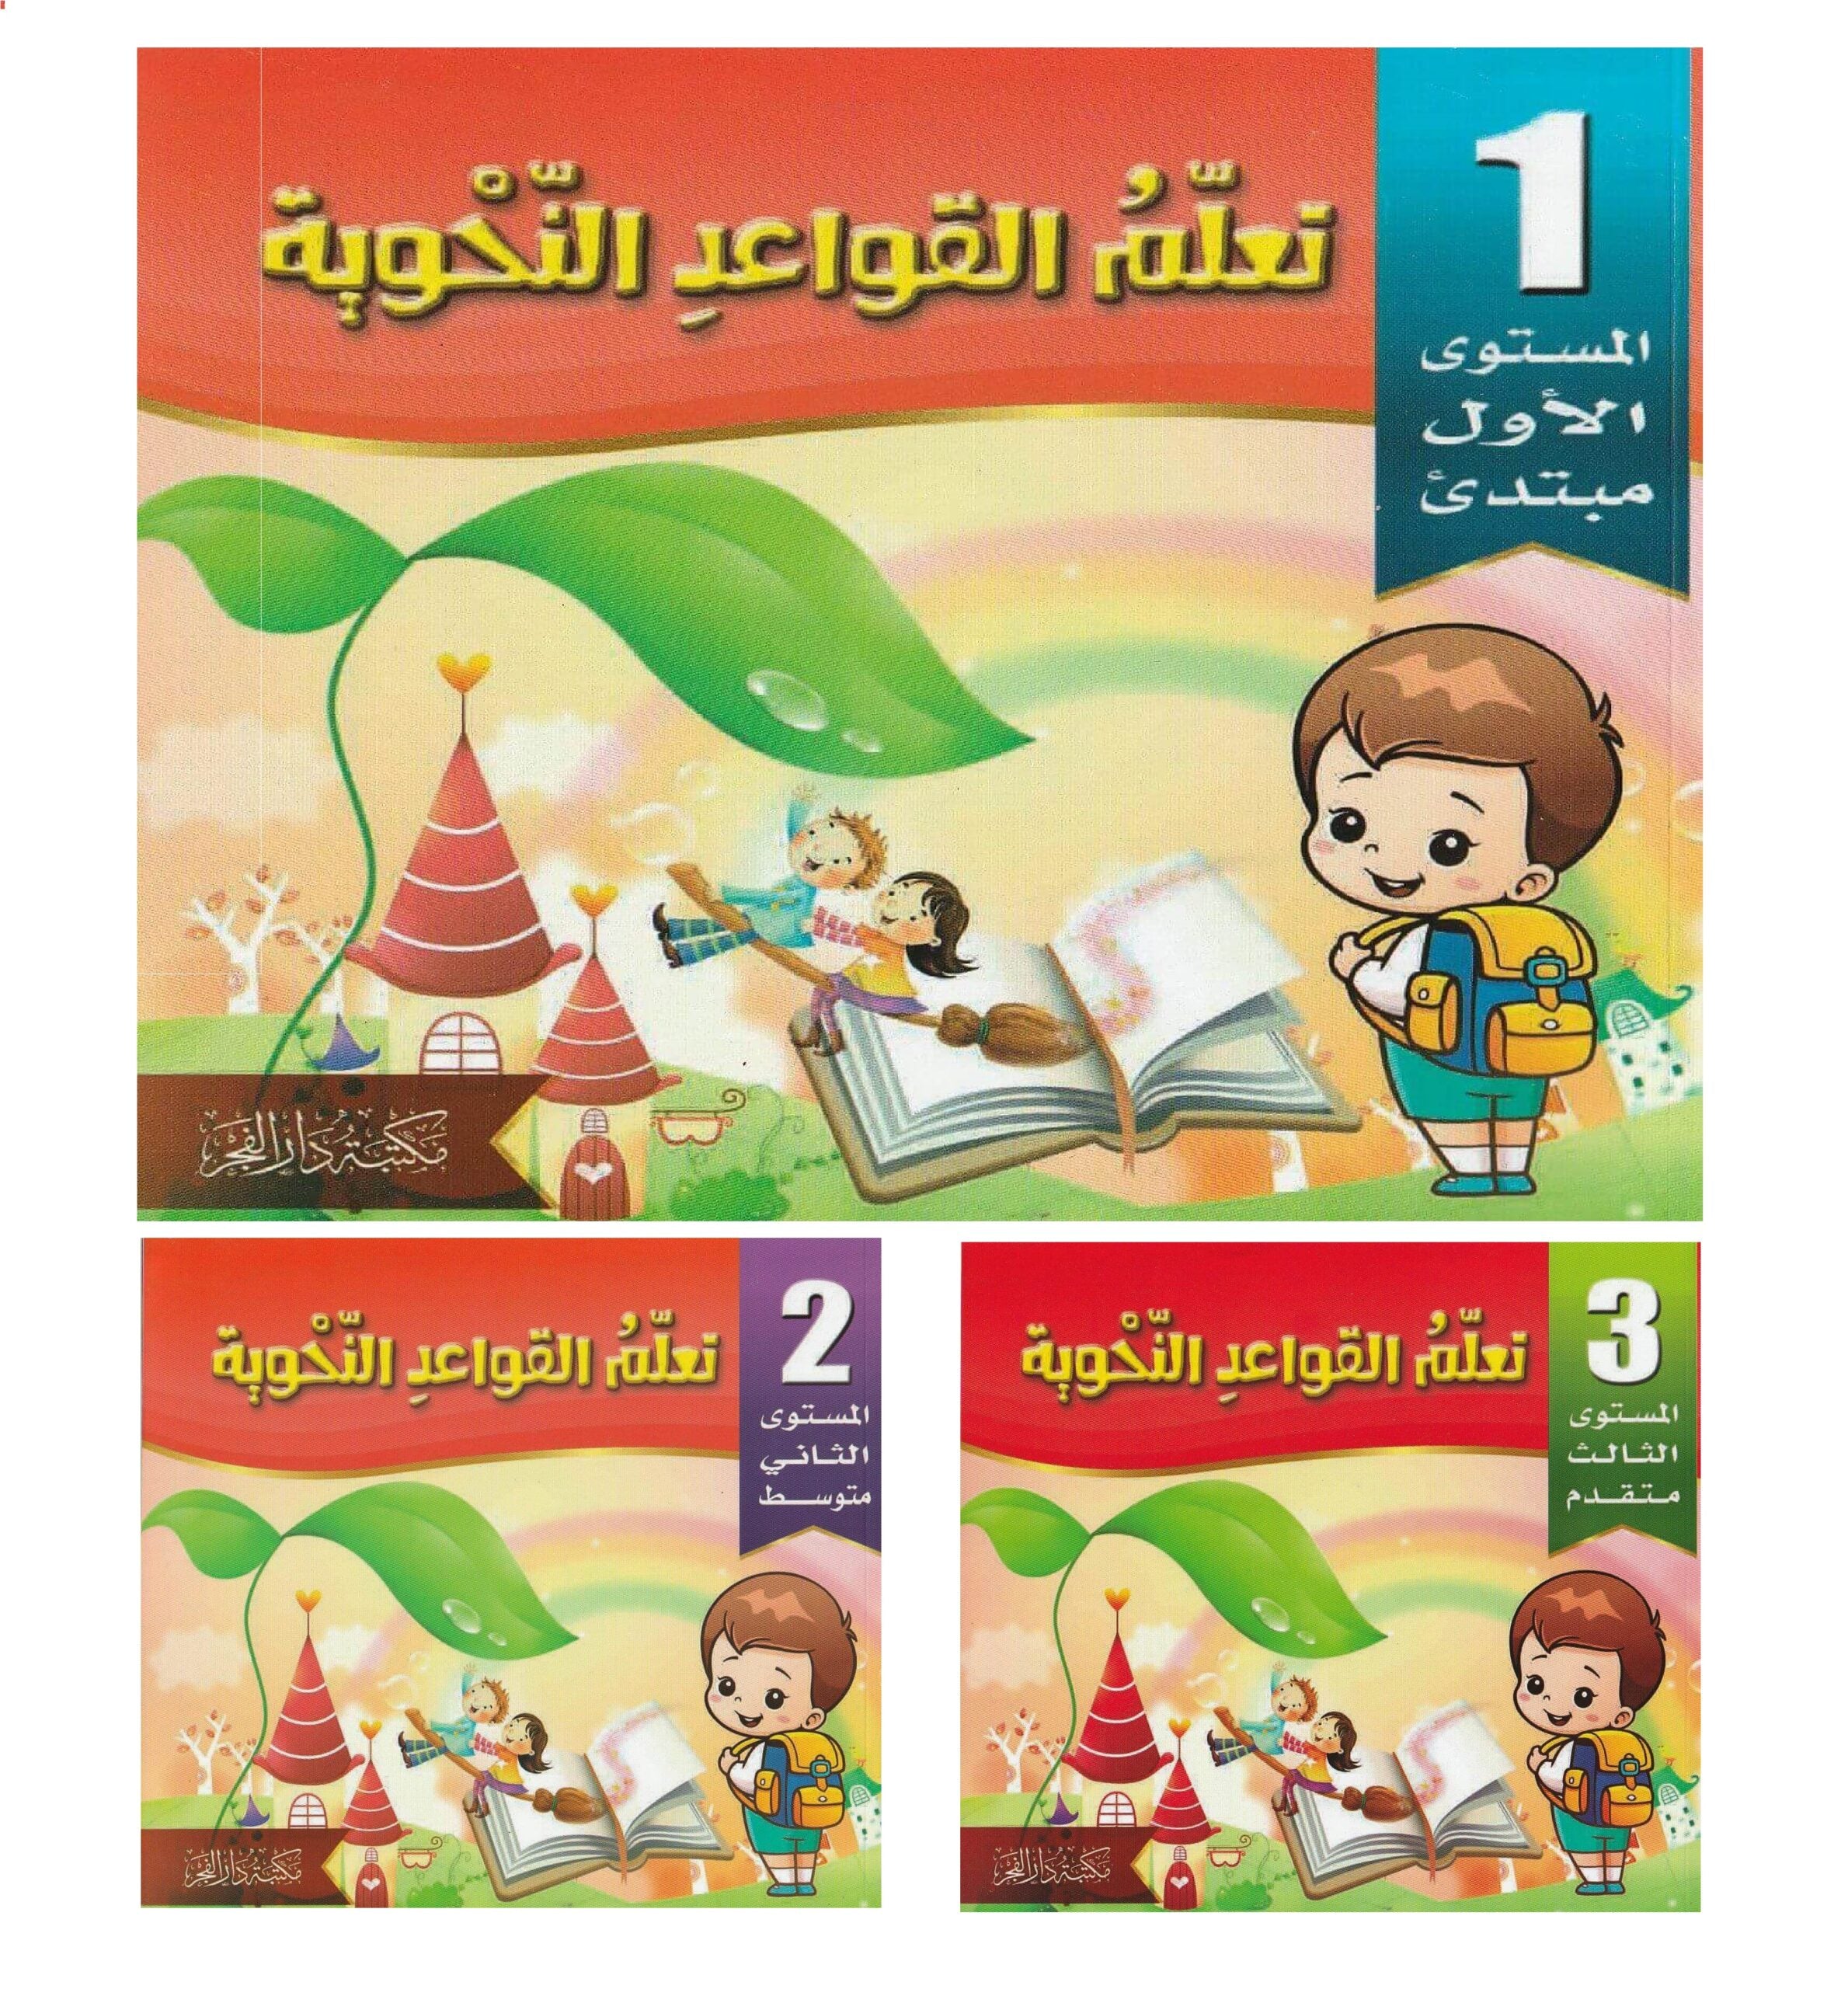 سلسلة تعلم القواعد النحوية للأطفال كتب أطفال اللجنة العلمية لمكتبة دار الفجر الجزء الأول